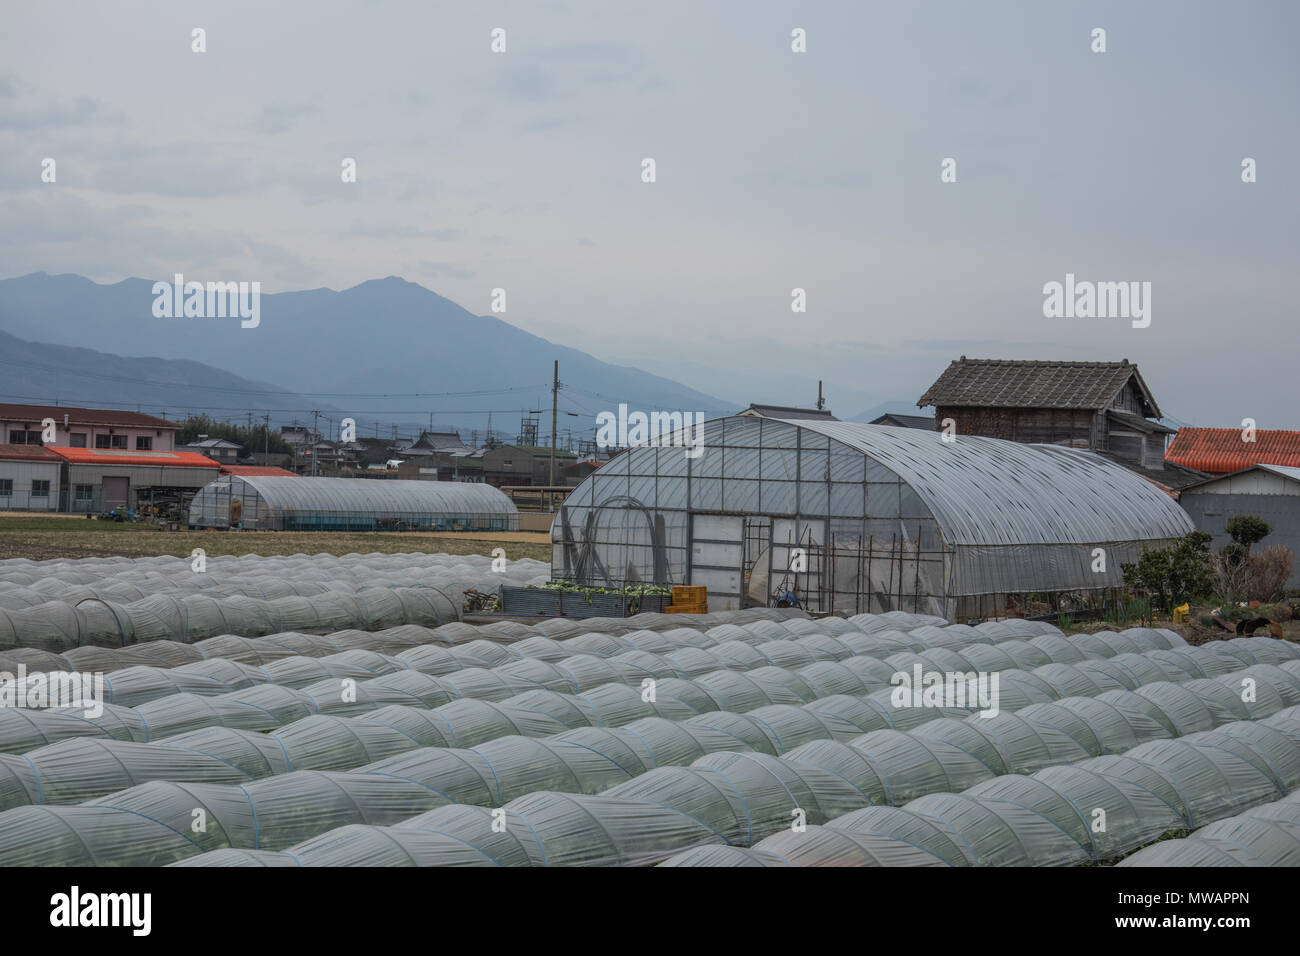 La horticultura, la agricultura japonesa contemporánea, un típico paisaje rural. La agricultura industrial con túnel de plástico casas, Tokushima, Shikoku, Japón Foto de stock